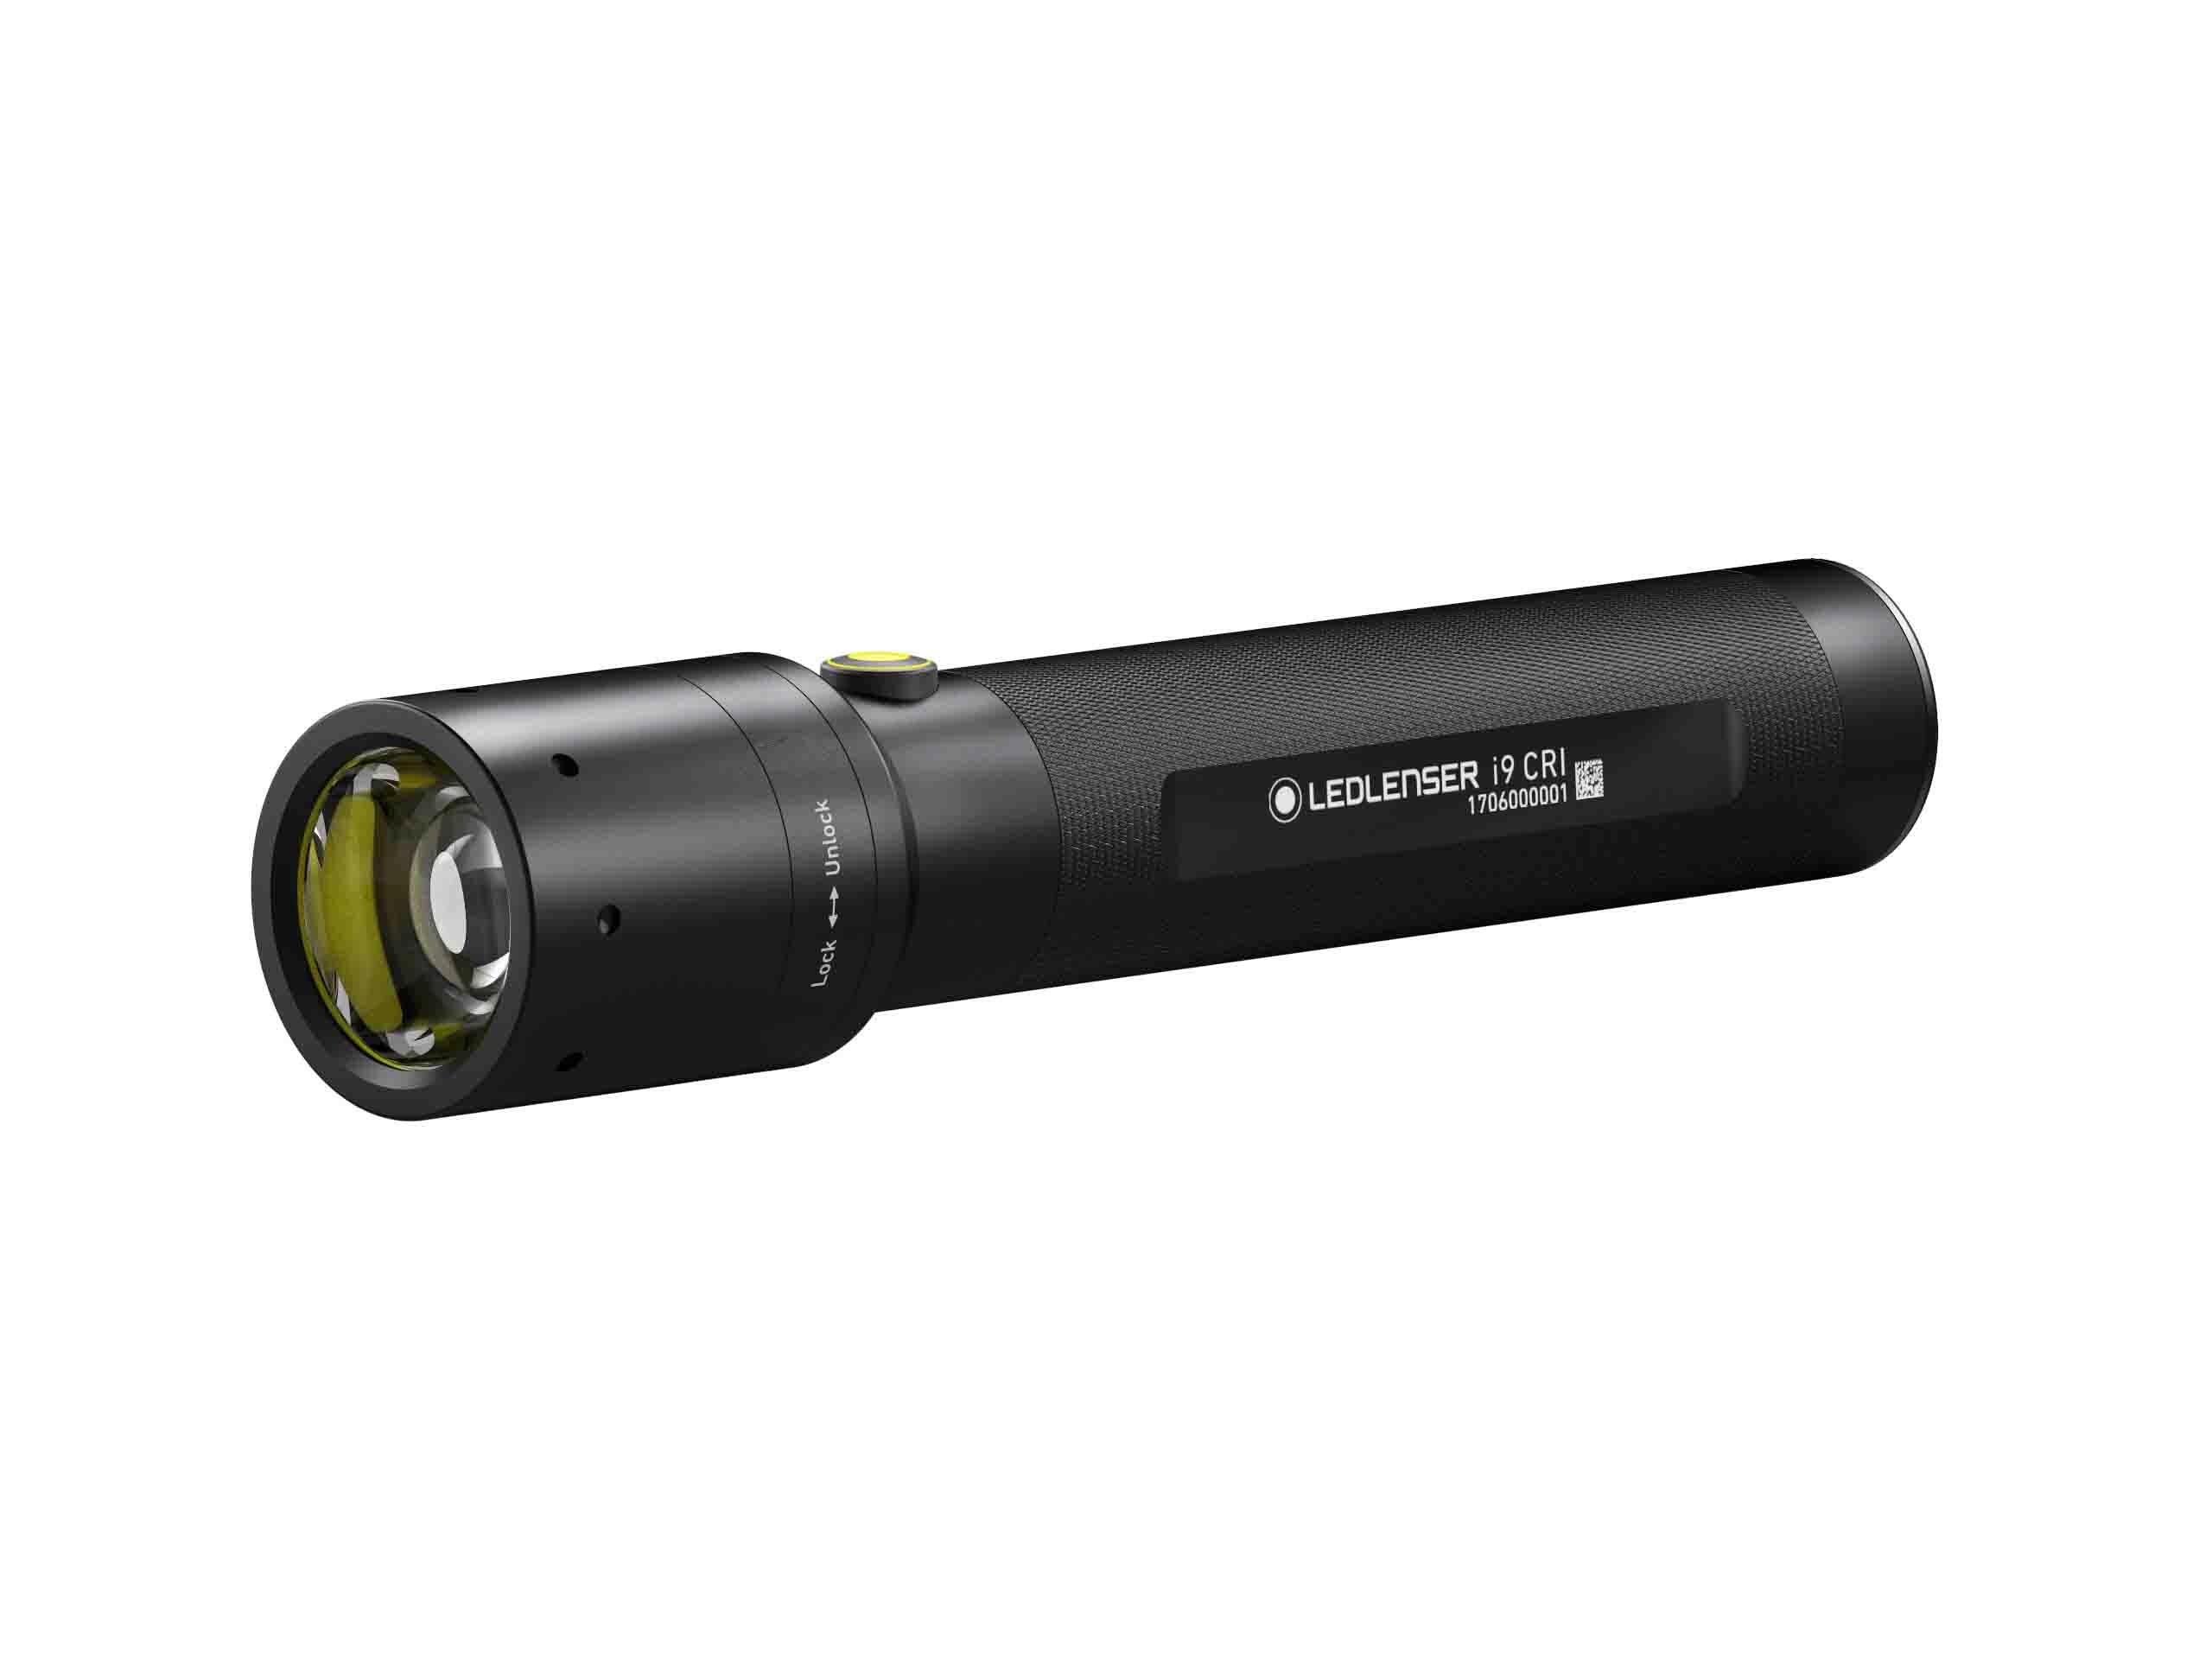 Led-lenser 1628961 LED-Taschenlampe i9 CRI 40-300 lm 2xC Babyzellen 90-240m LED LENSER